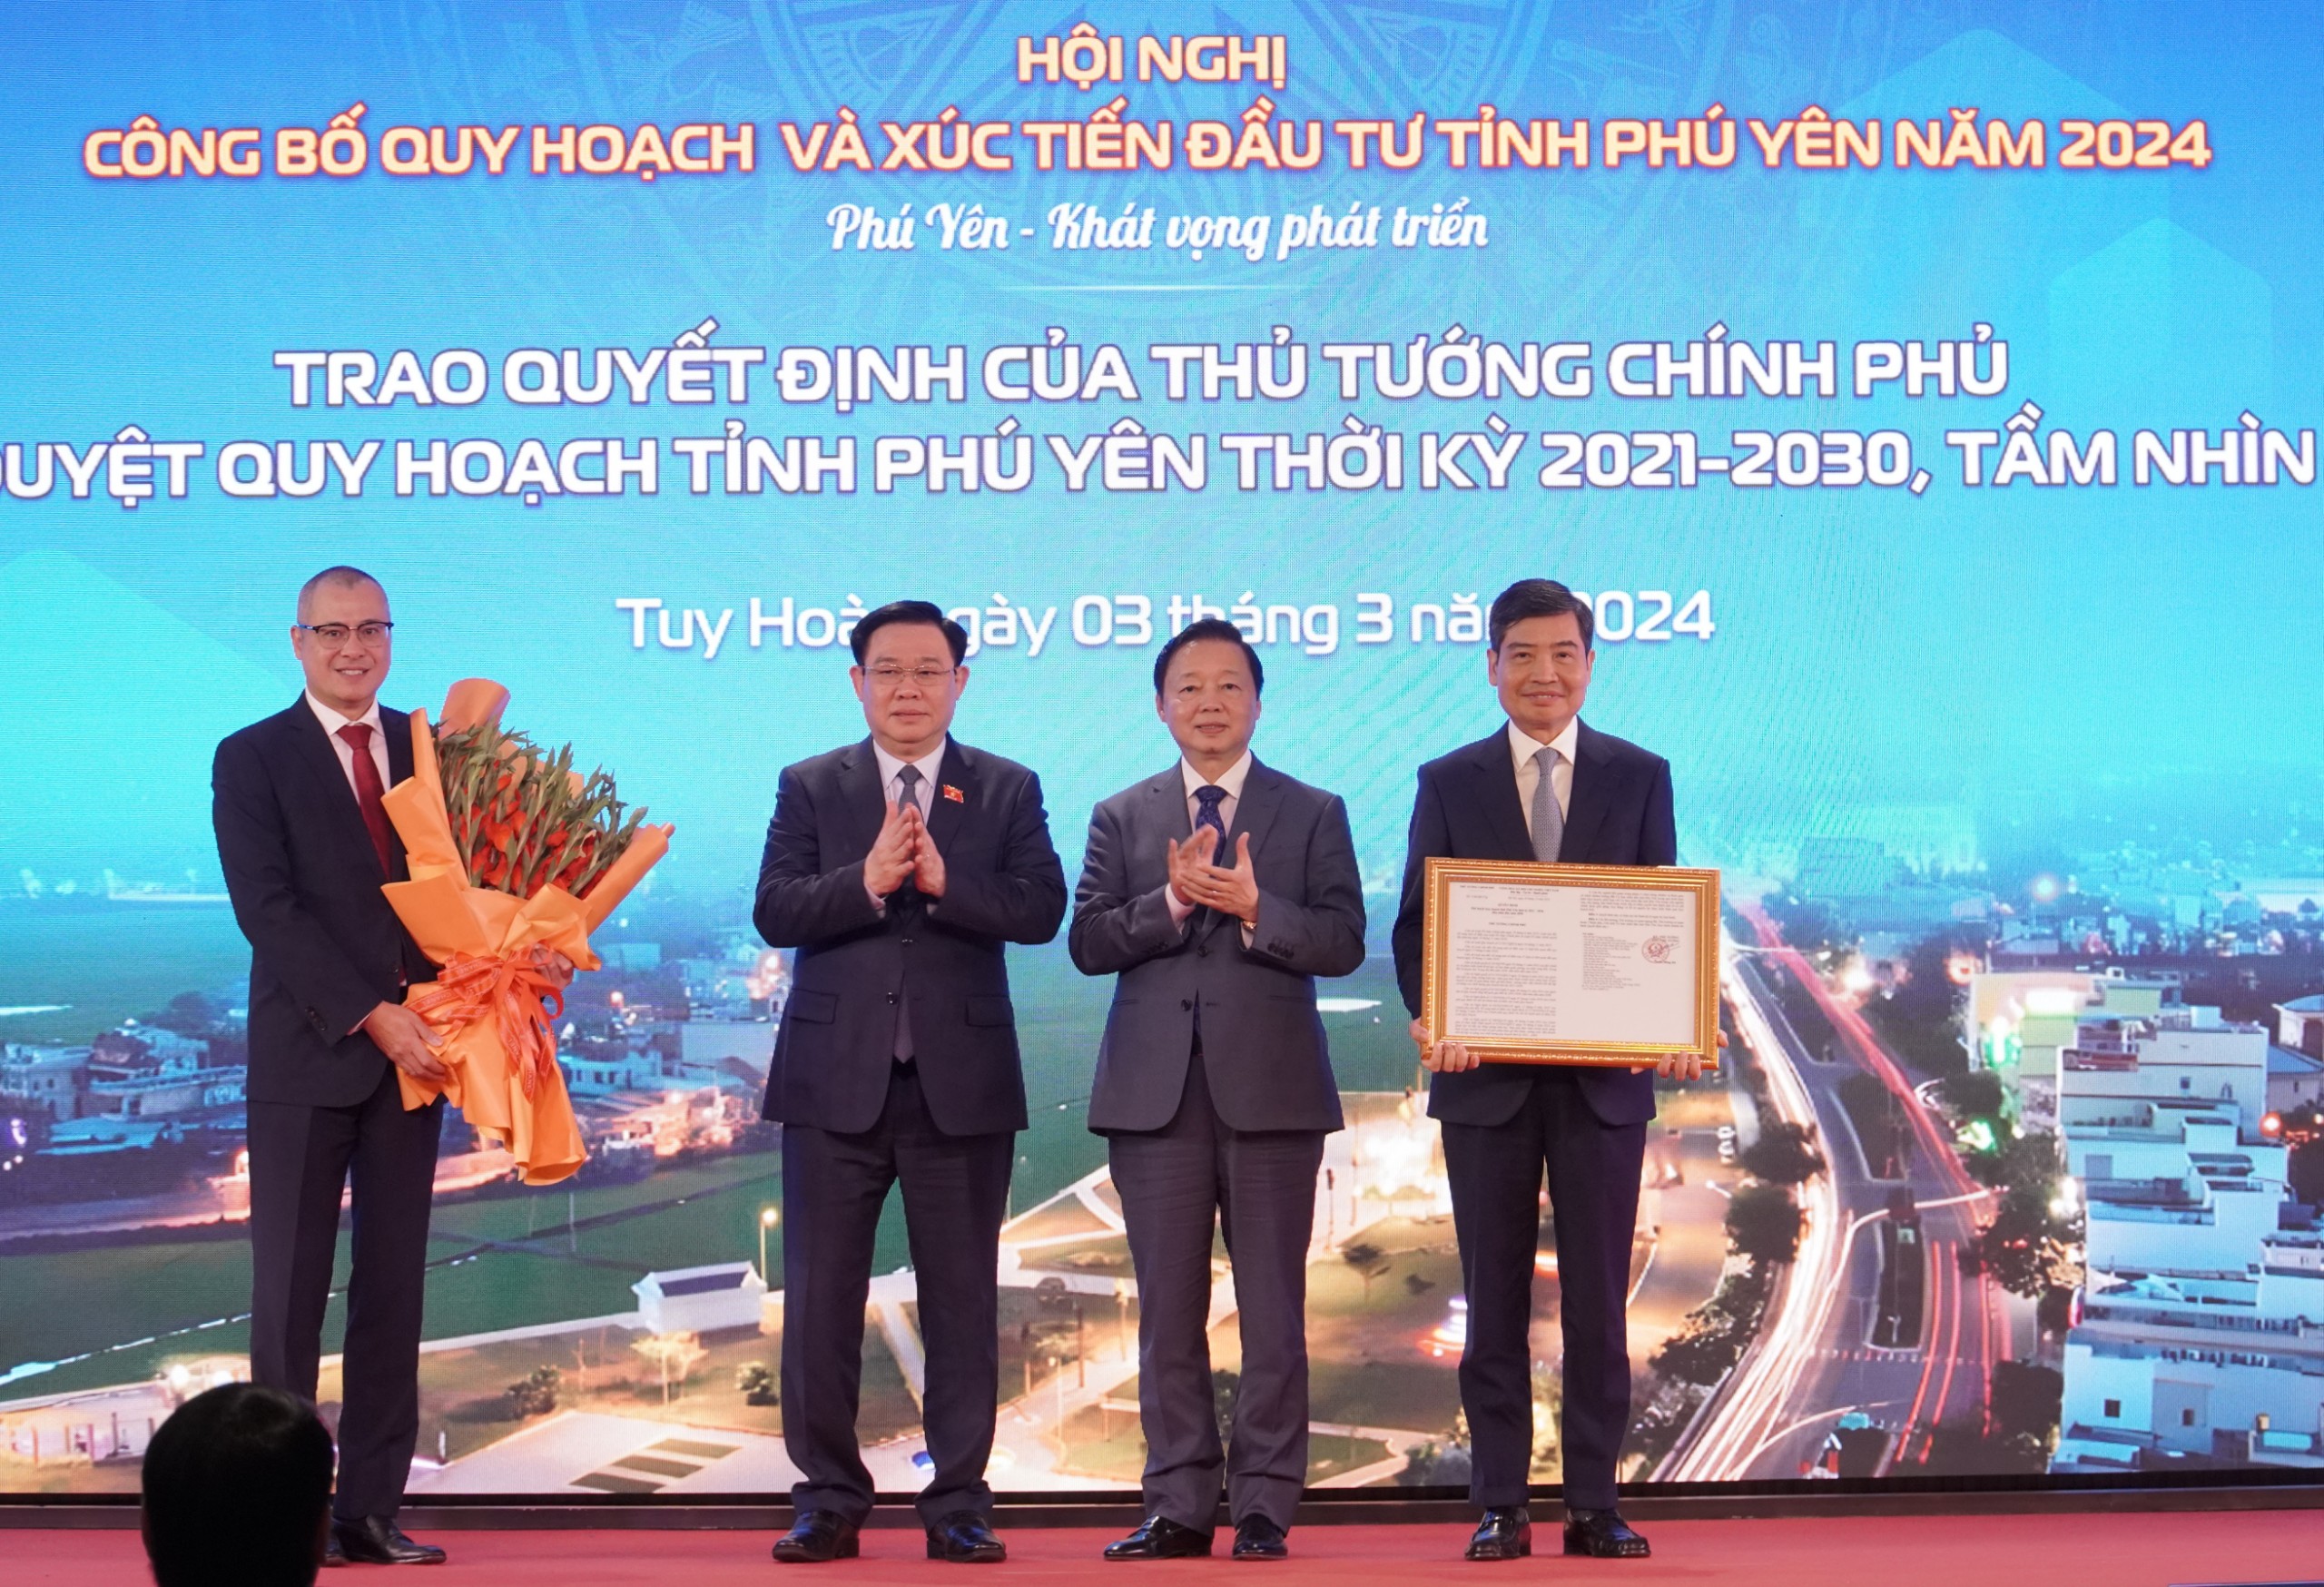 Phó Thủ tướng Trần Hồng Hà: Phú Yên phải trở thành địa chỉ đáng đầu tư, cống hiến, trải nghiệm- Ảnh 1.